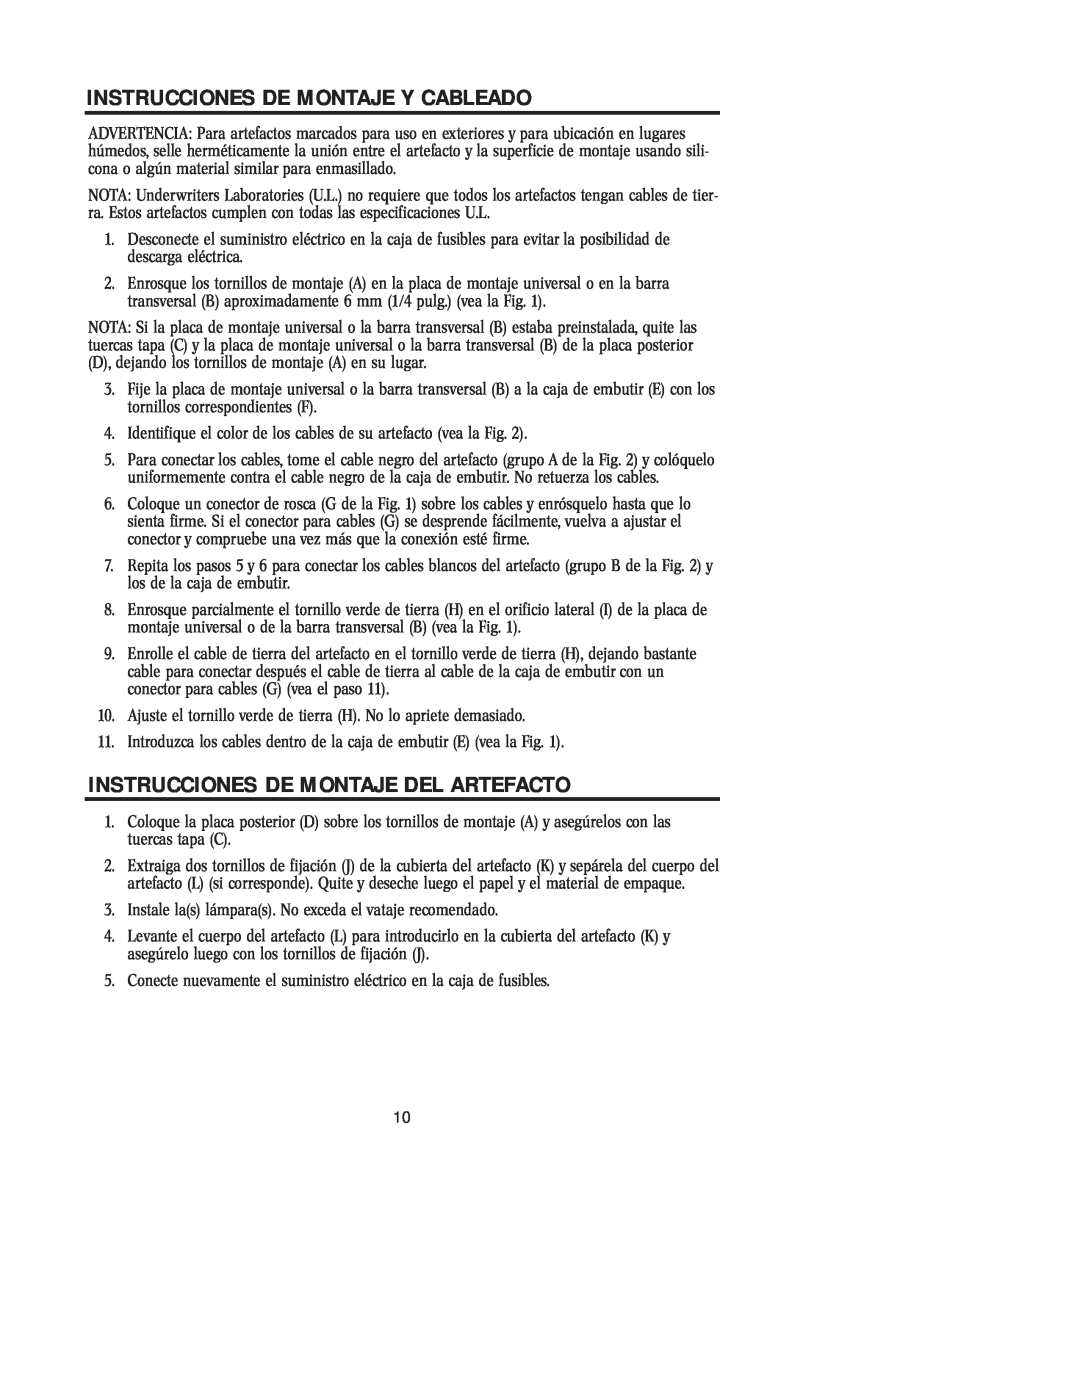 Westinghouse 100405 owner manual Instrucciones De Montaje Y Cableado, Instrucciones De Montaje Del Artefacto 